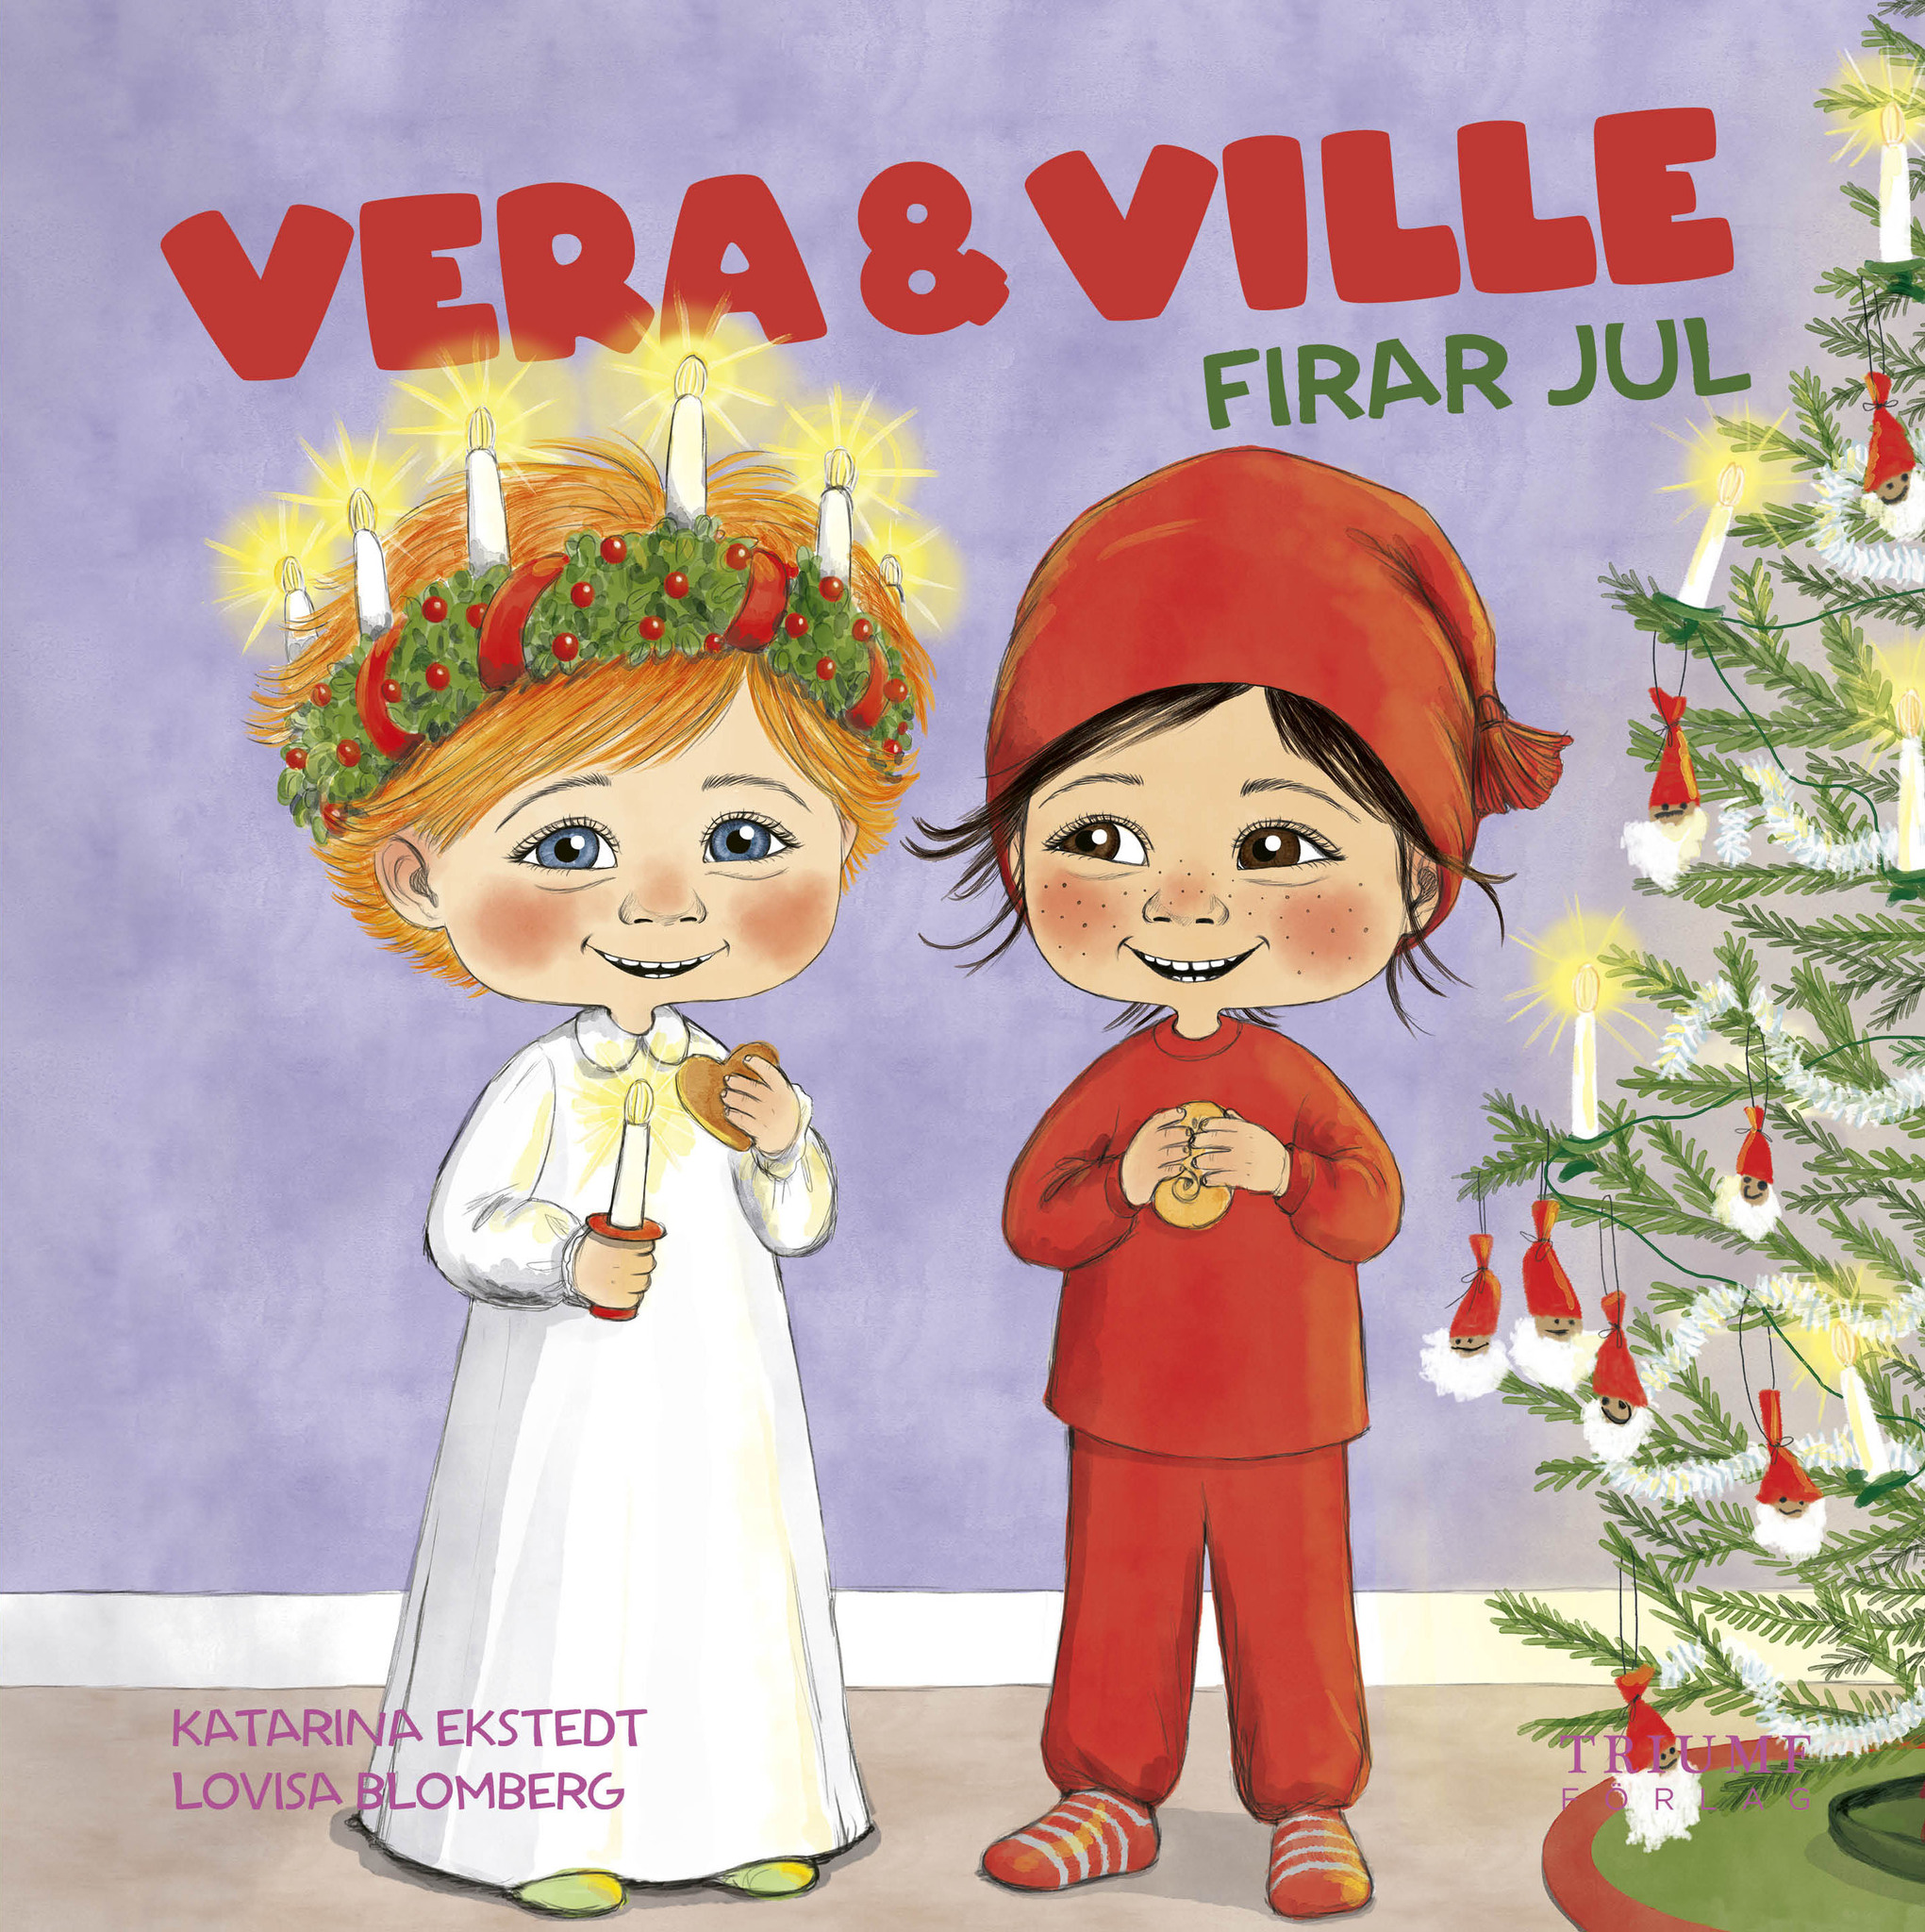 "Vera och ville firar jul" av Katarina Ekstedt